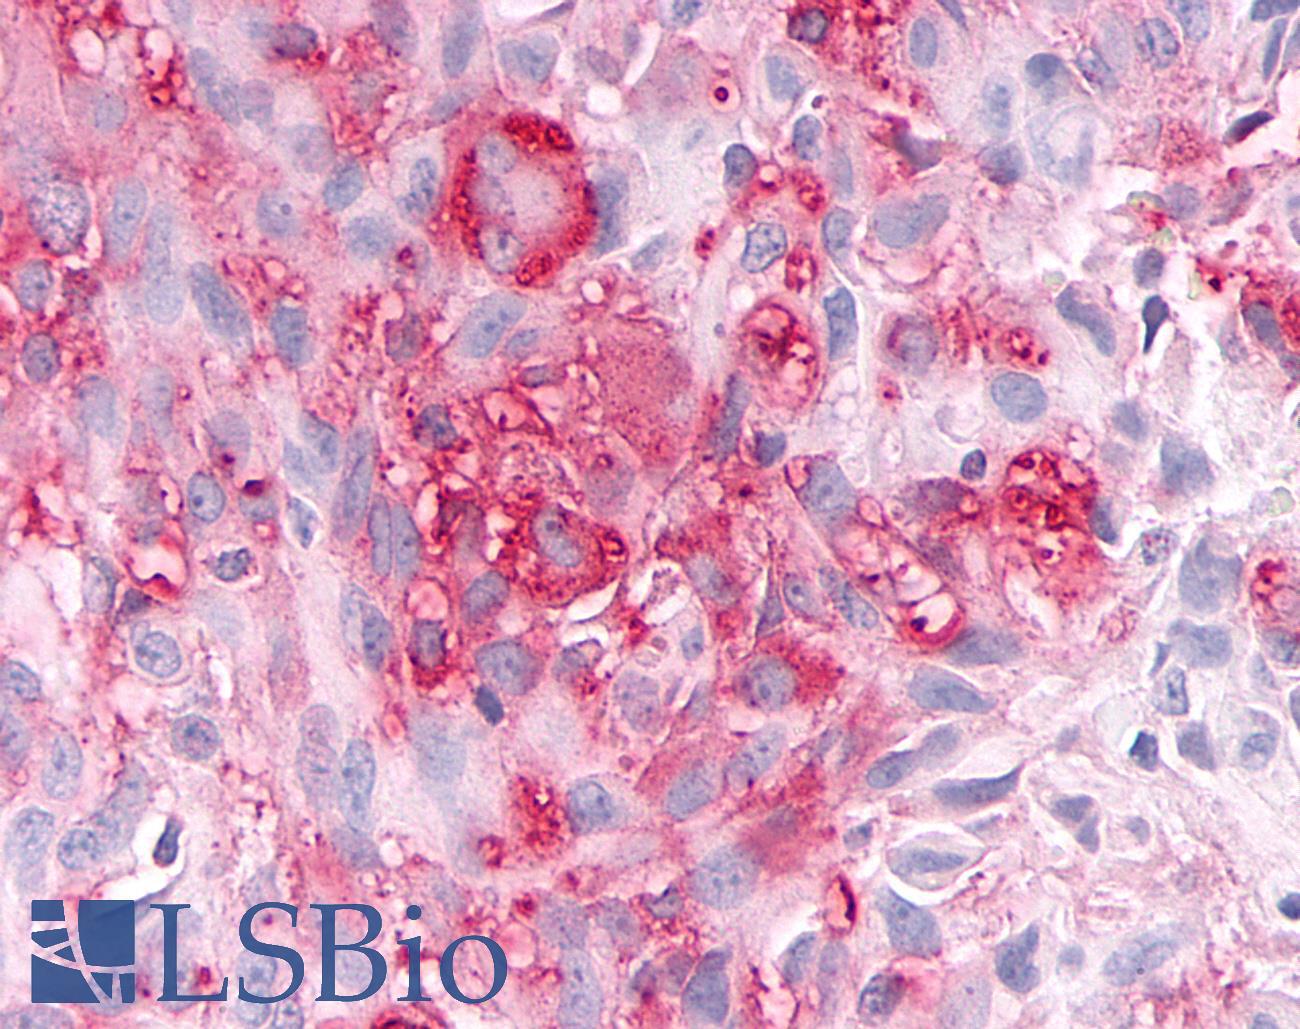 ADAMTS4 Antibody - Brain, Glioblastoma